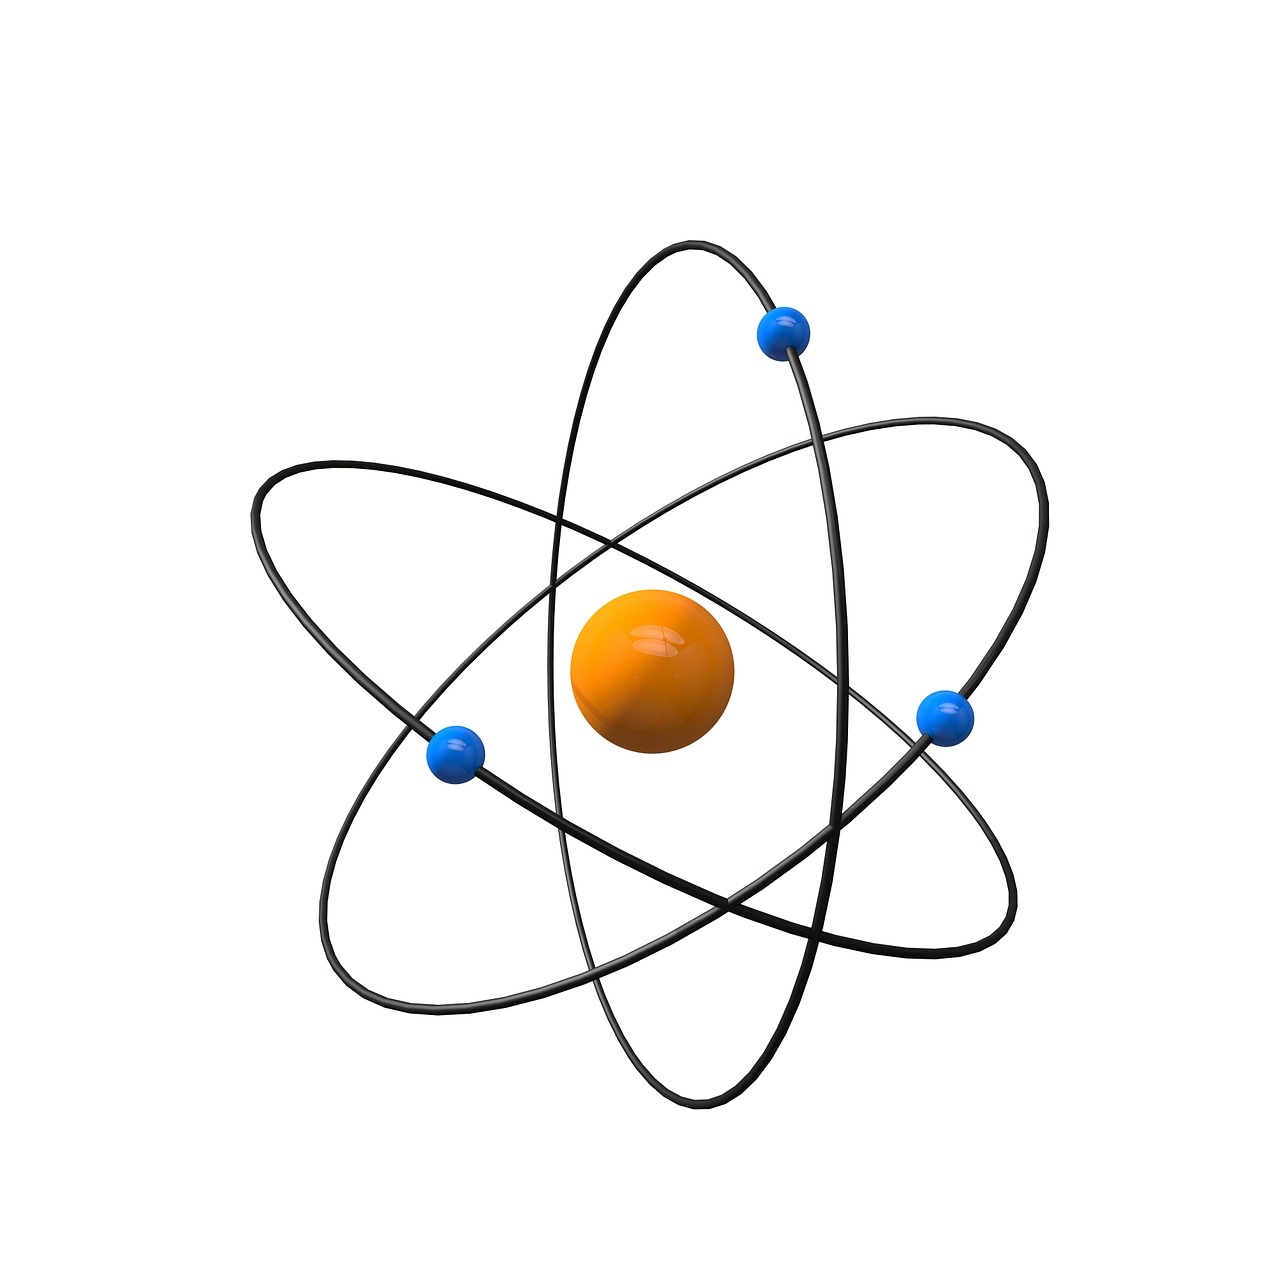 Atomas, Mokslas, Tyrimai, Fizika, Chemija, Mokykla, Mokytis, Studijuoti, Mokymas, Fizikas